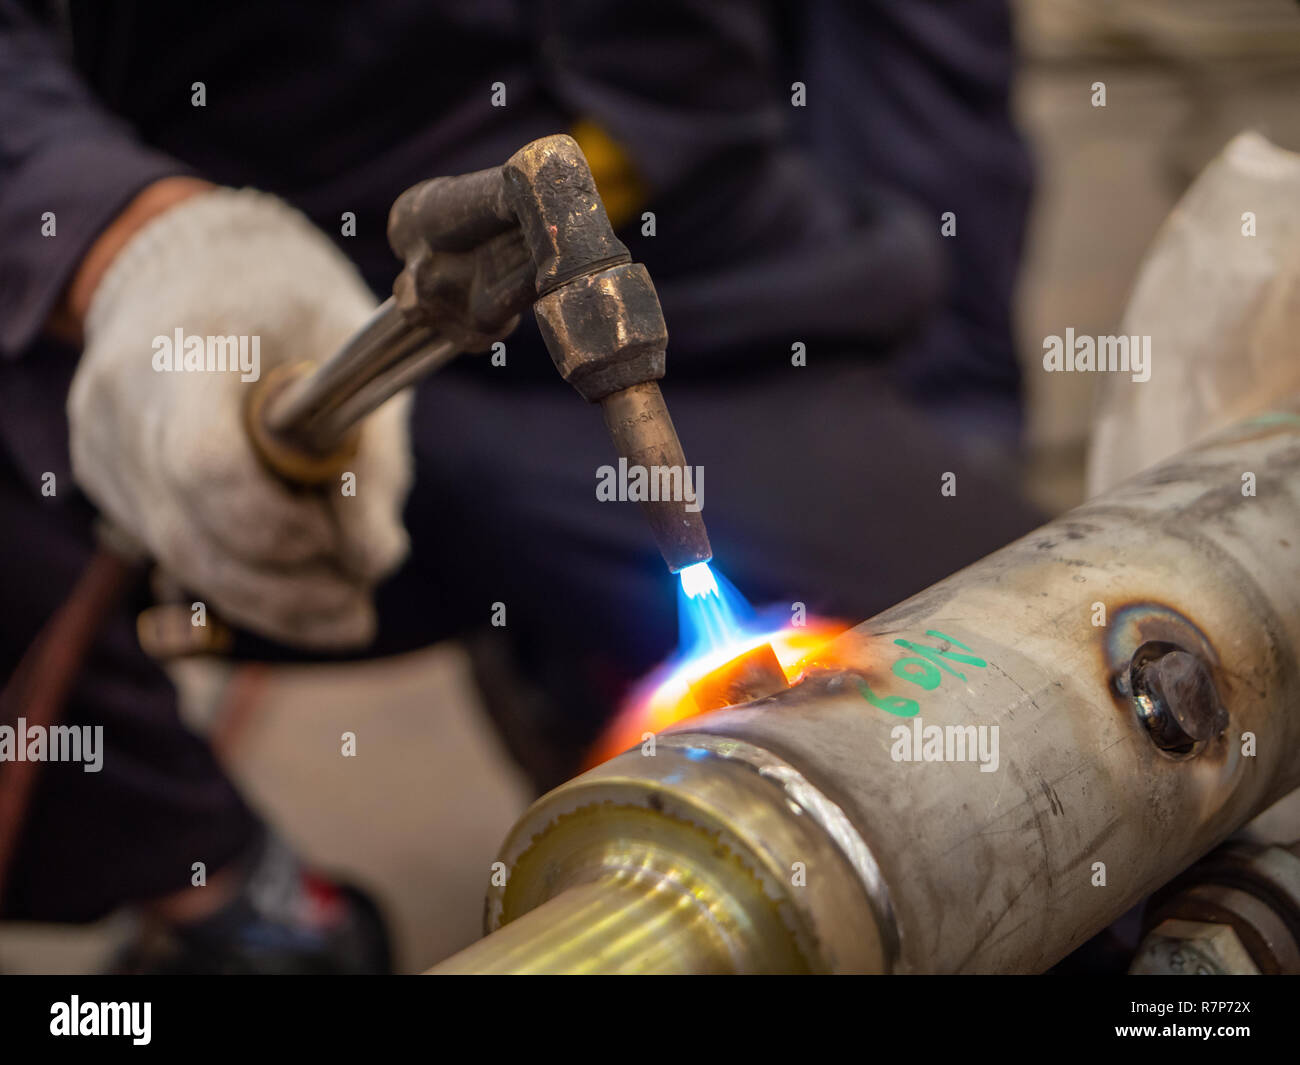 Schweißarbeiten von Edelstahl Industrie teil, die ausgeführt werden. Flache Tiefenschärfe mit der Flamme schweißen im Fokus. Stockfoto